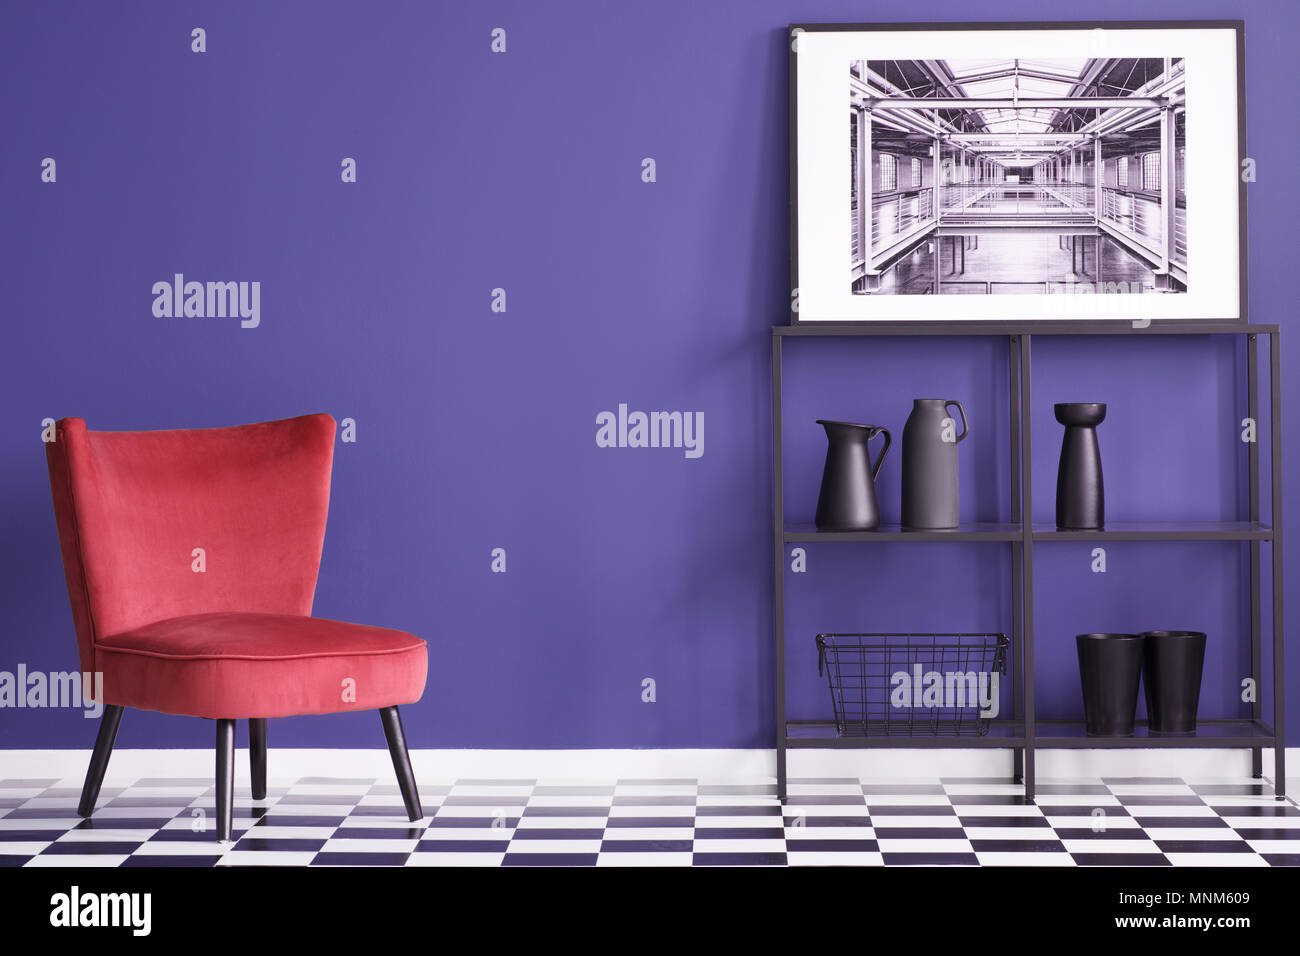 Vases noirs sur les étagères à proximité rouge suède président au sol en damier en violet télévision intérieur avec poster Banque D'Images